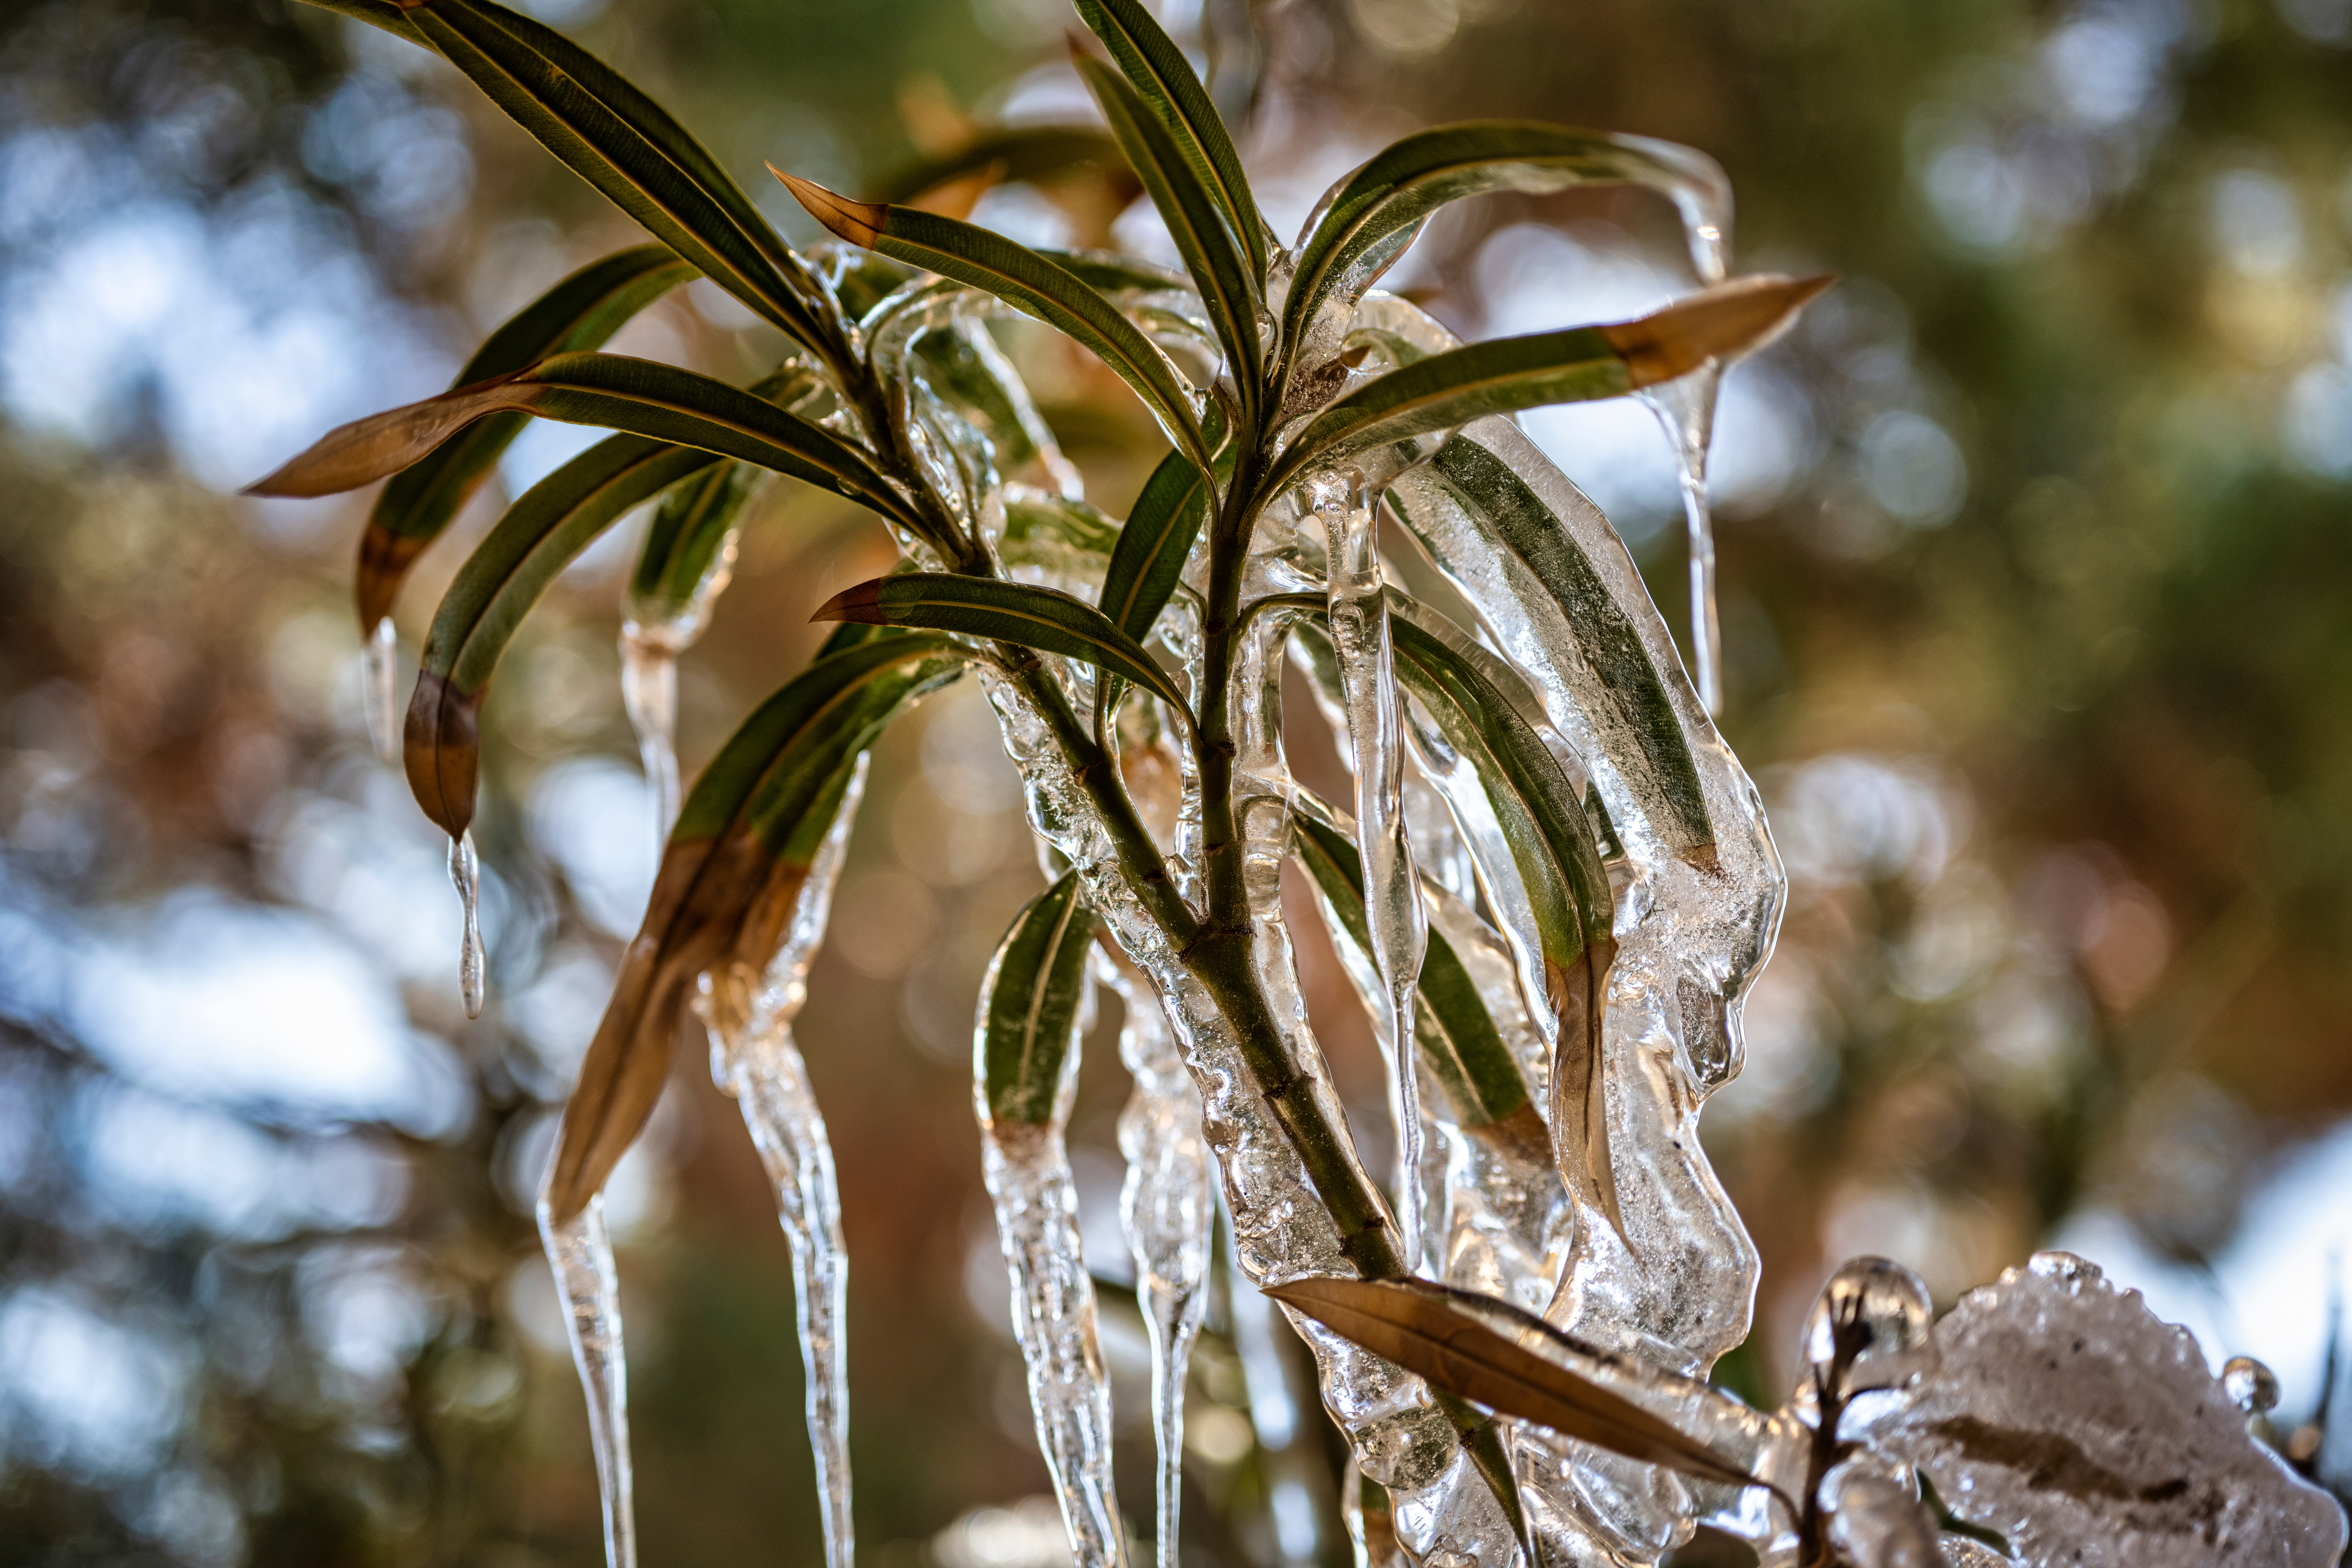 Comment protéger un laurier rose en hiver ? Copyright (c) 2022 Grossinger/Shutterstock.